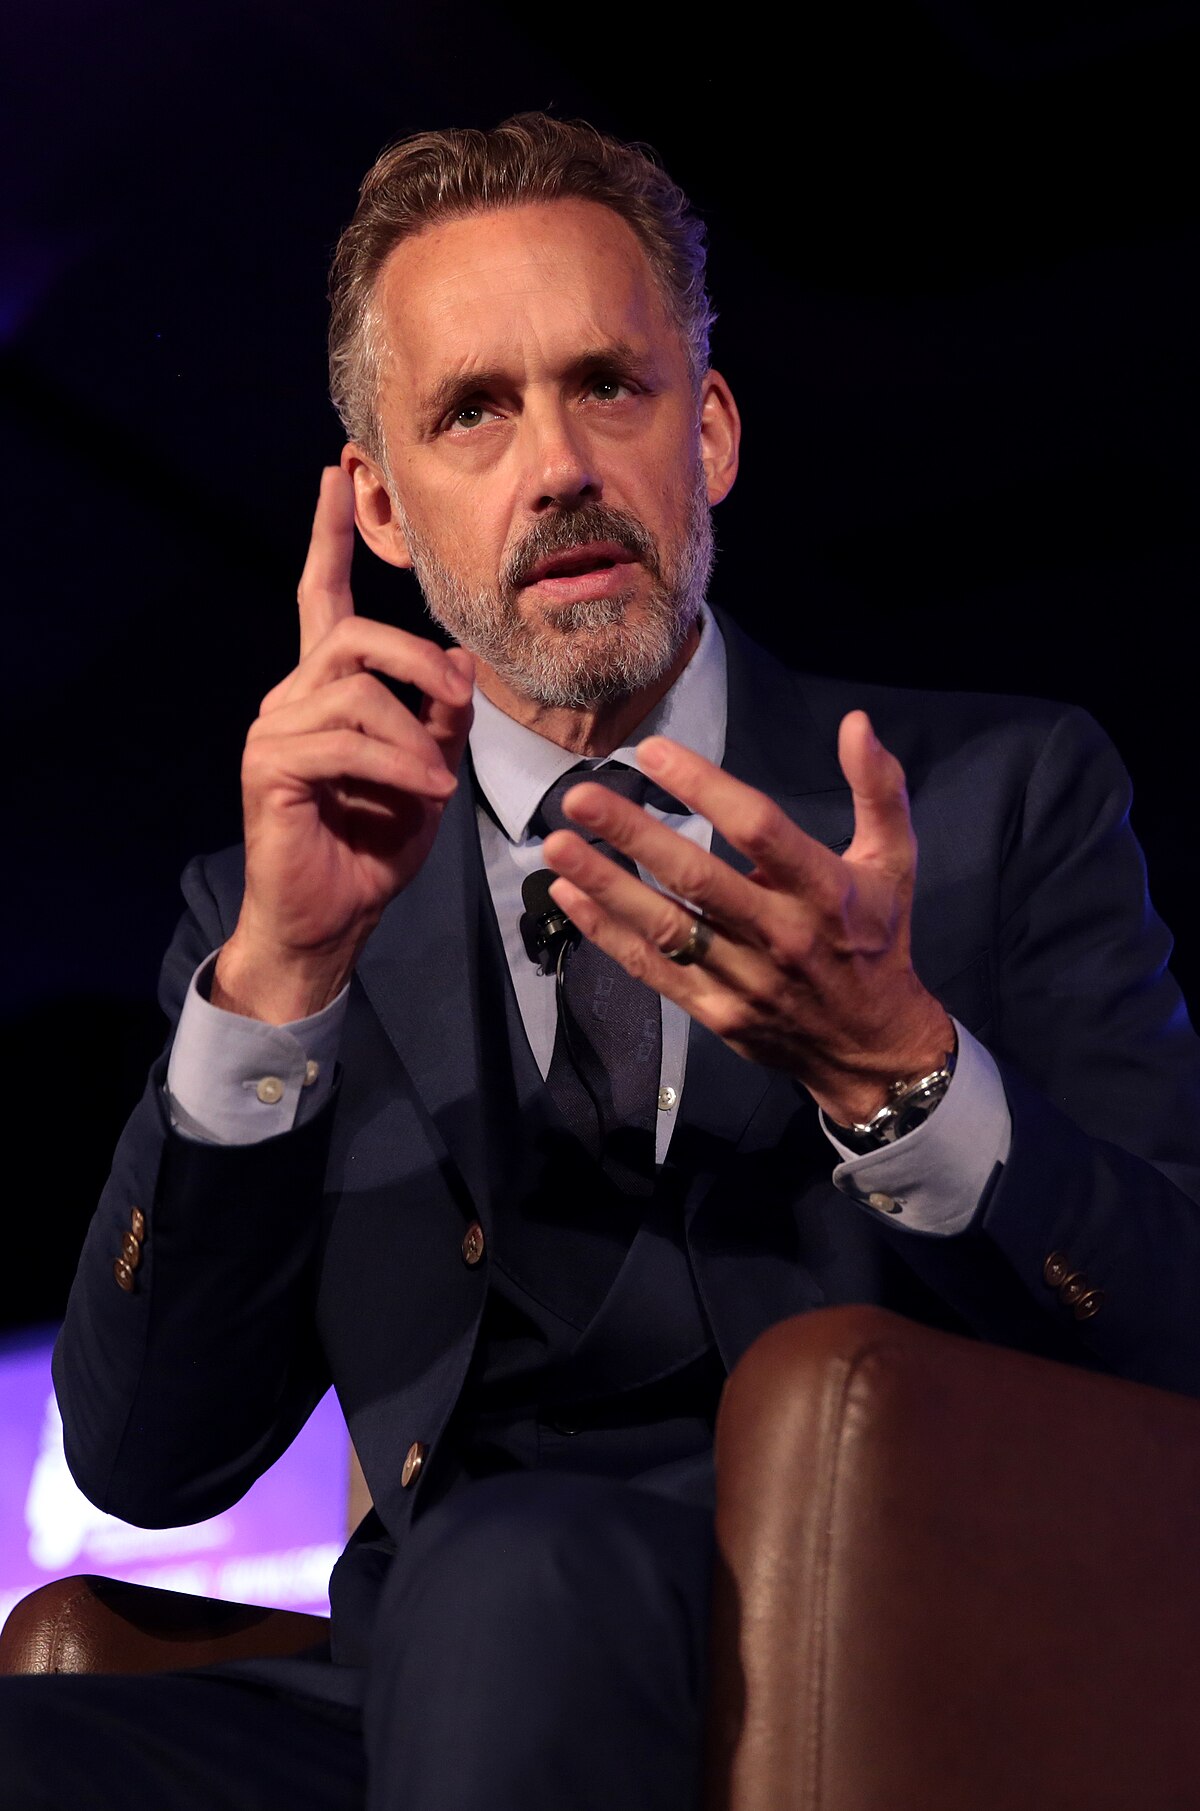 voldtage kontakt pels Peterson–Žižek debate - Wikipedia